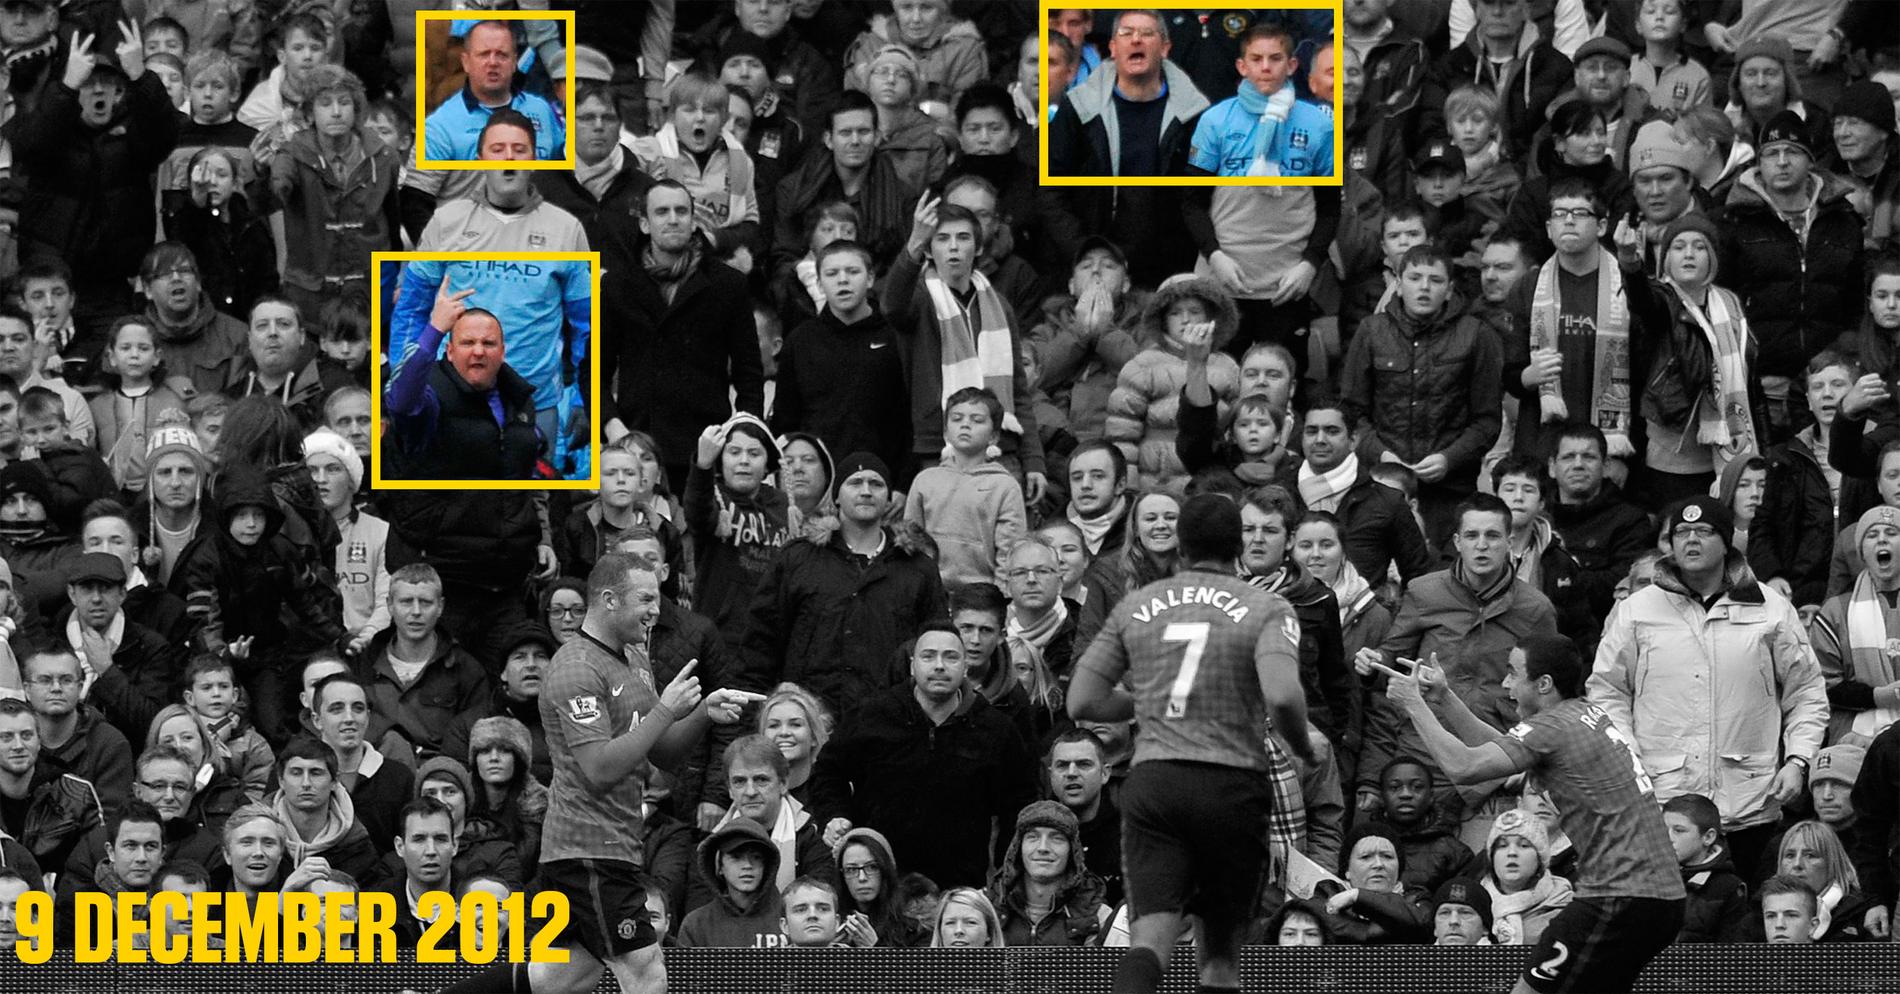 Rooney firar tillsammans med Rafael och Antonio Valencia den 9 december 2012.